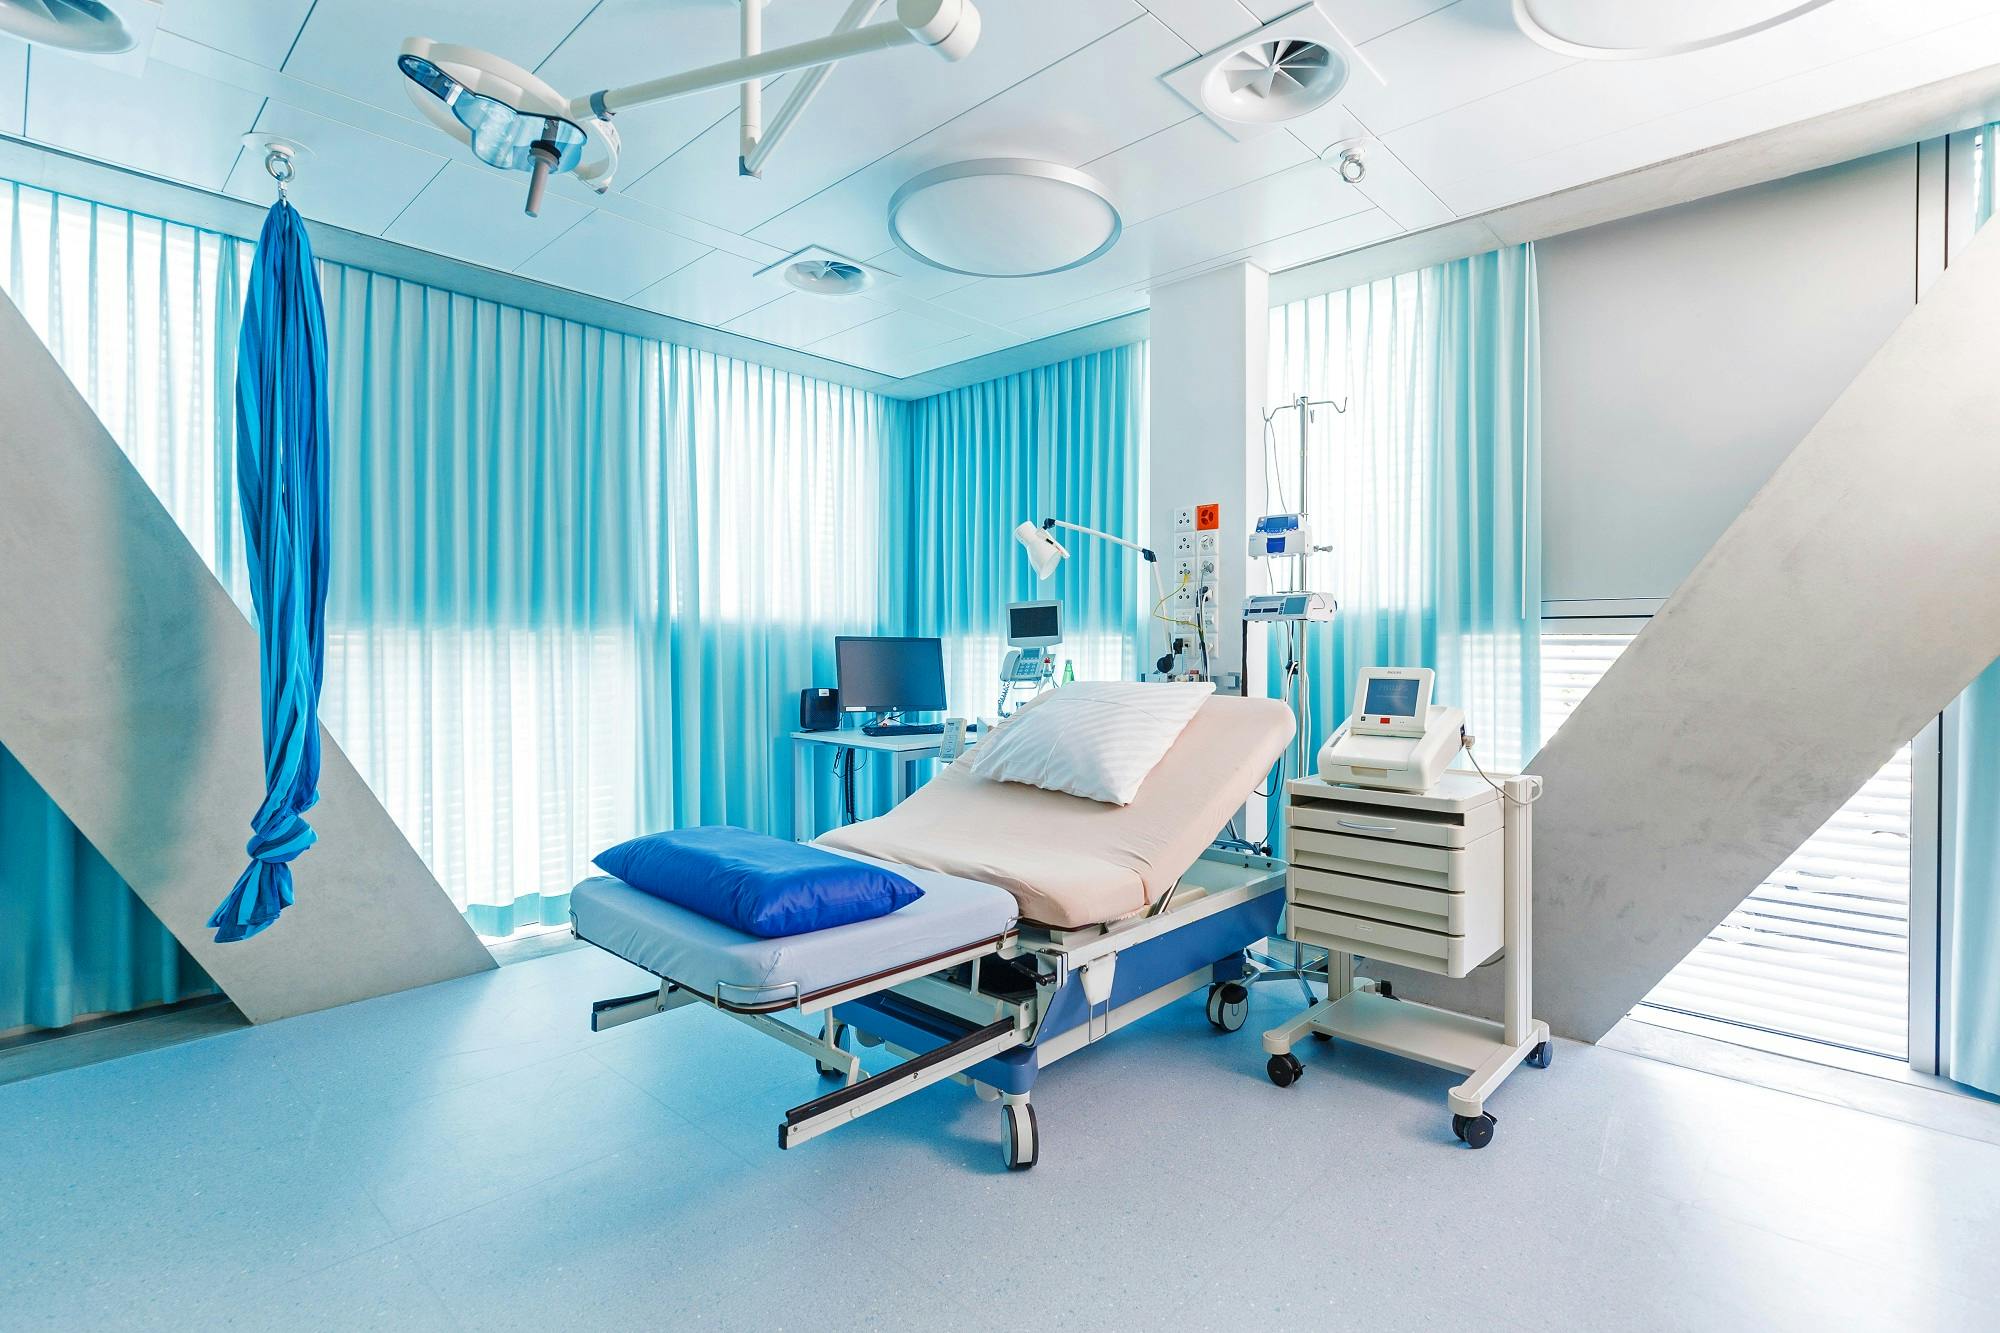 Krankenhaus-Operationsraum mit medizinischer Ausrüstung und OP-Tisch.